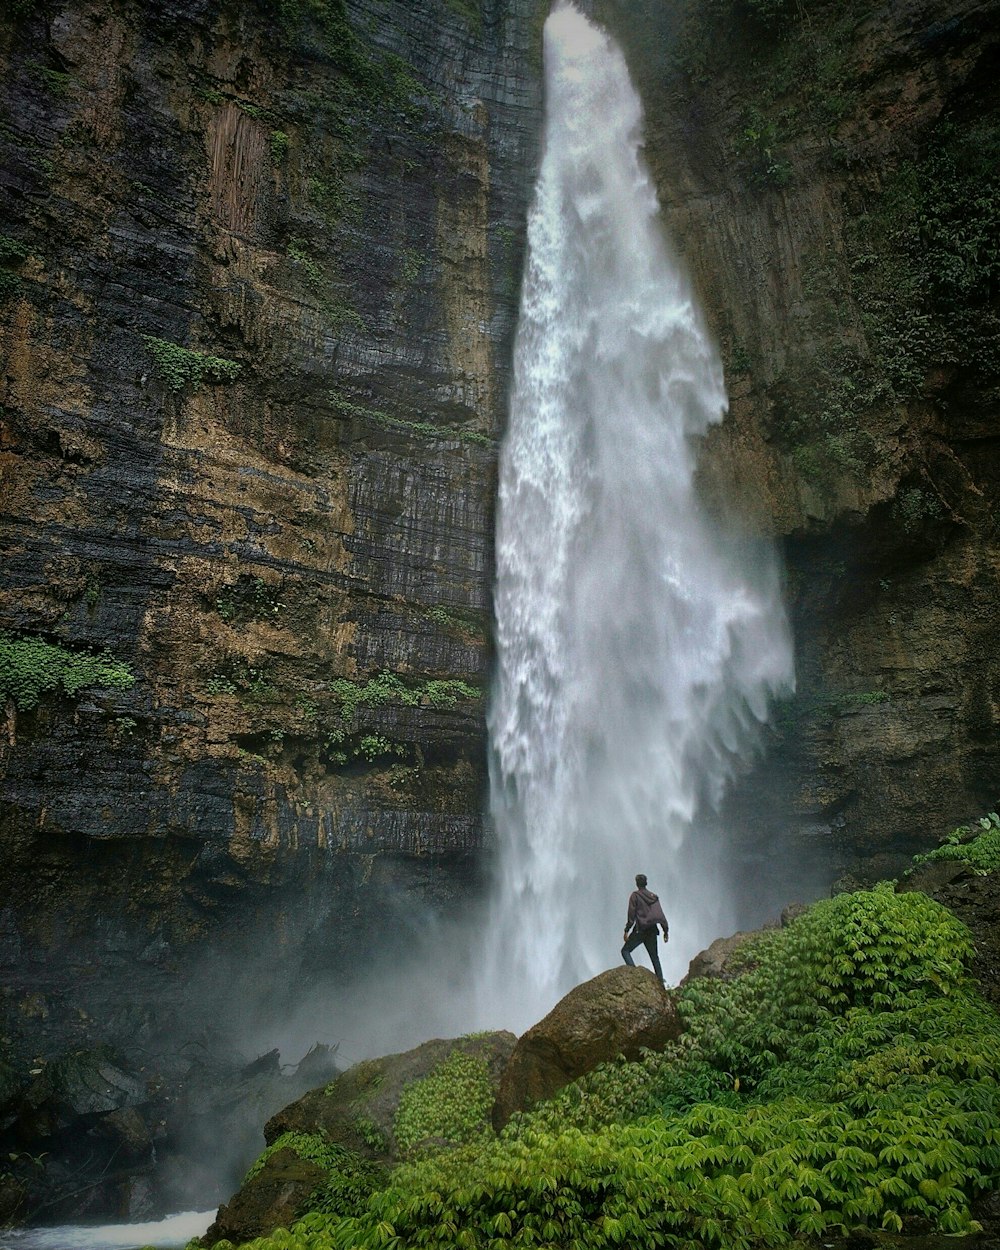 personne debout sur une formation rocheuse brune regardant des chutes d’eau pendant la journée